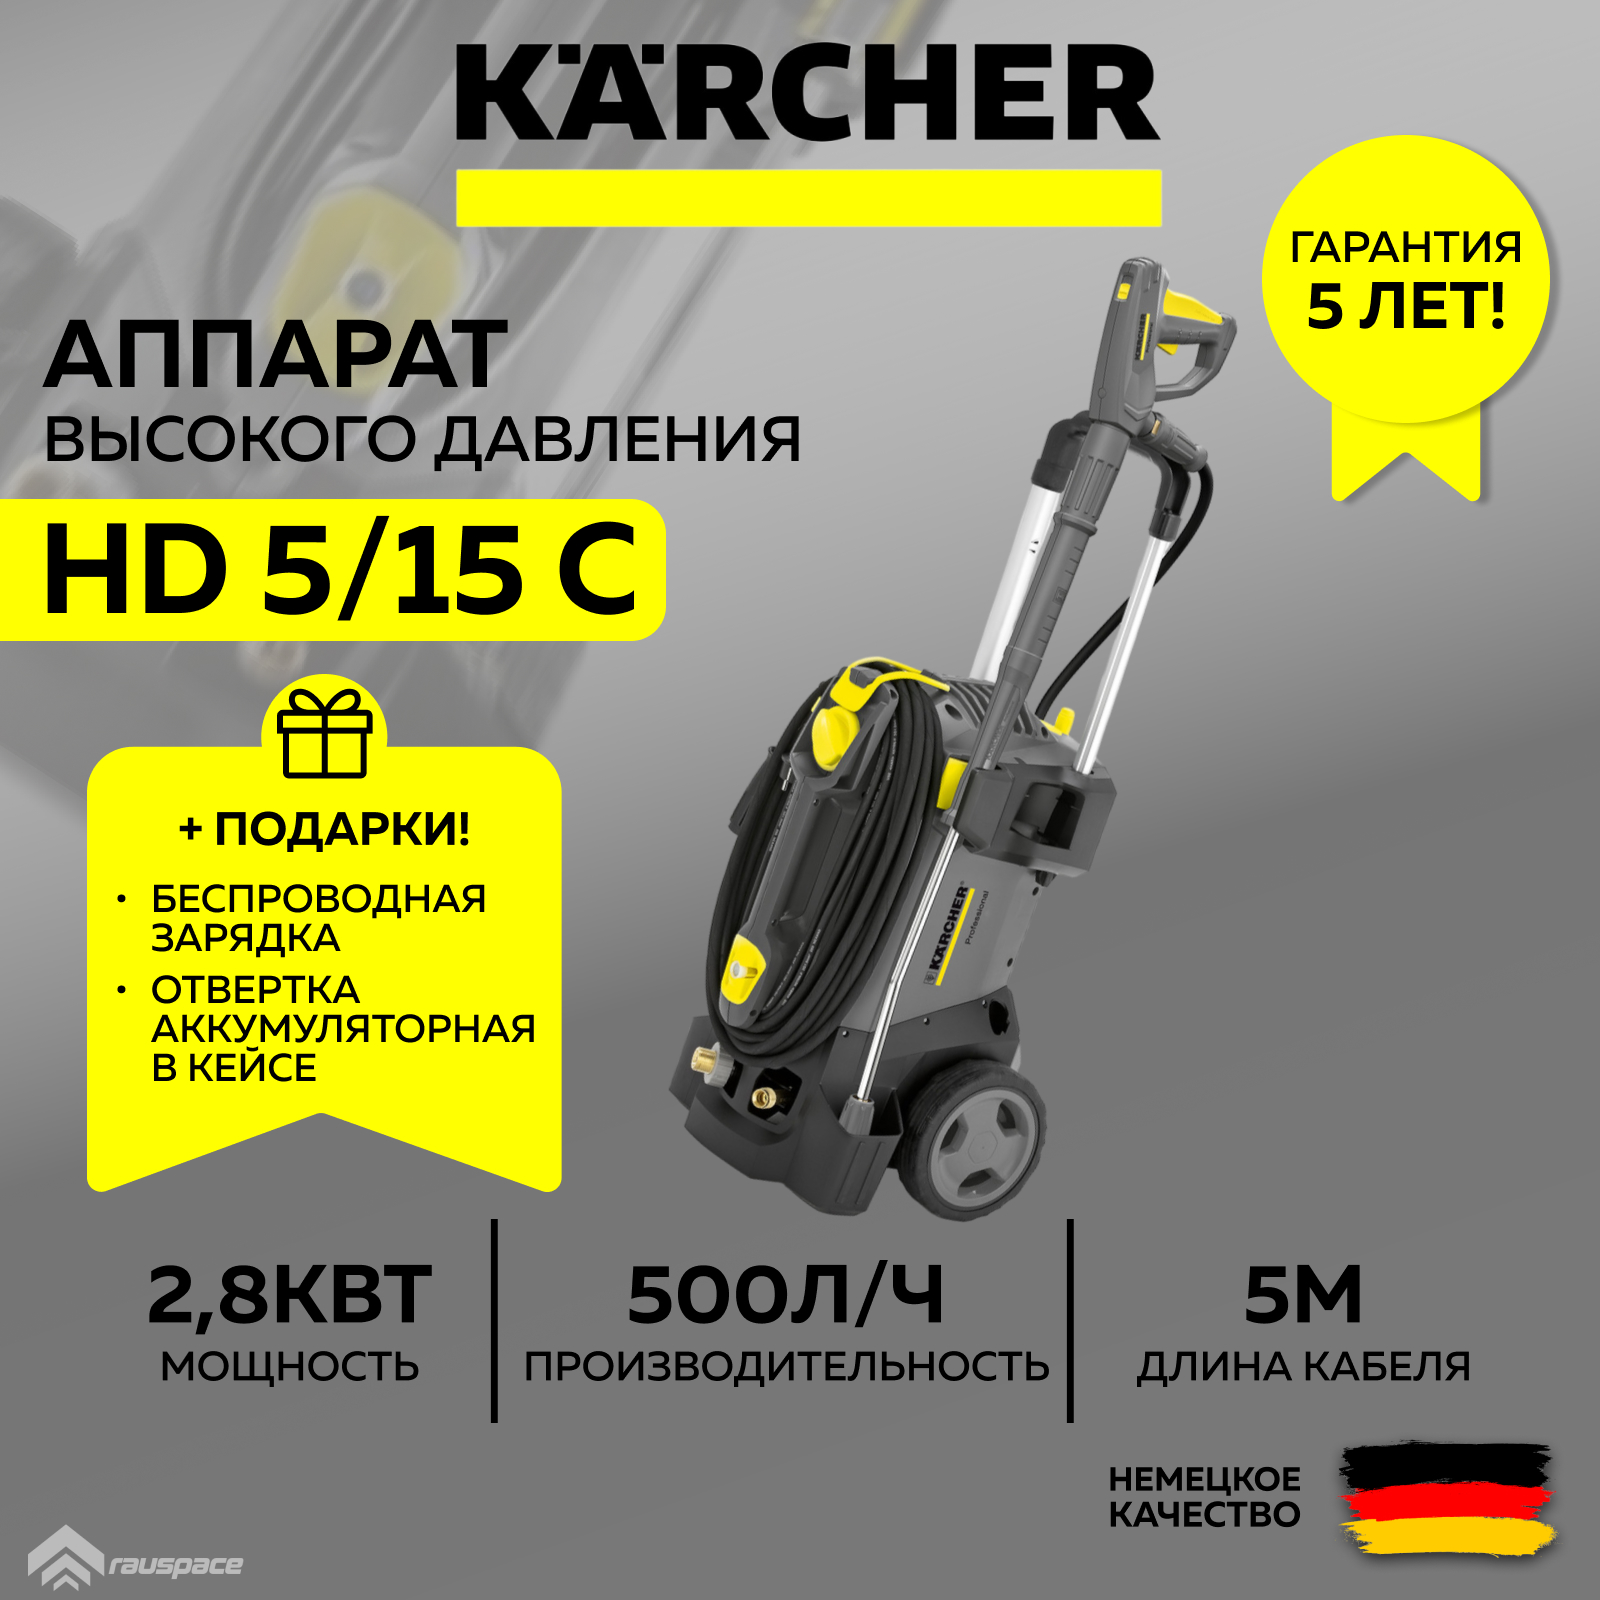 Мойка высокого давления Karcher 1.520-930.0-set - купить в Москве, цены на Мегамаркет | 600016641178